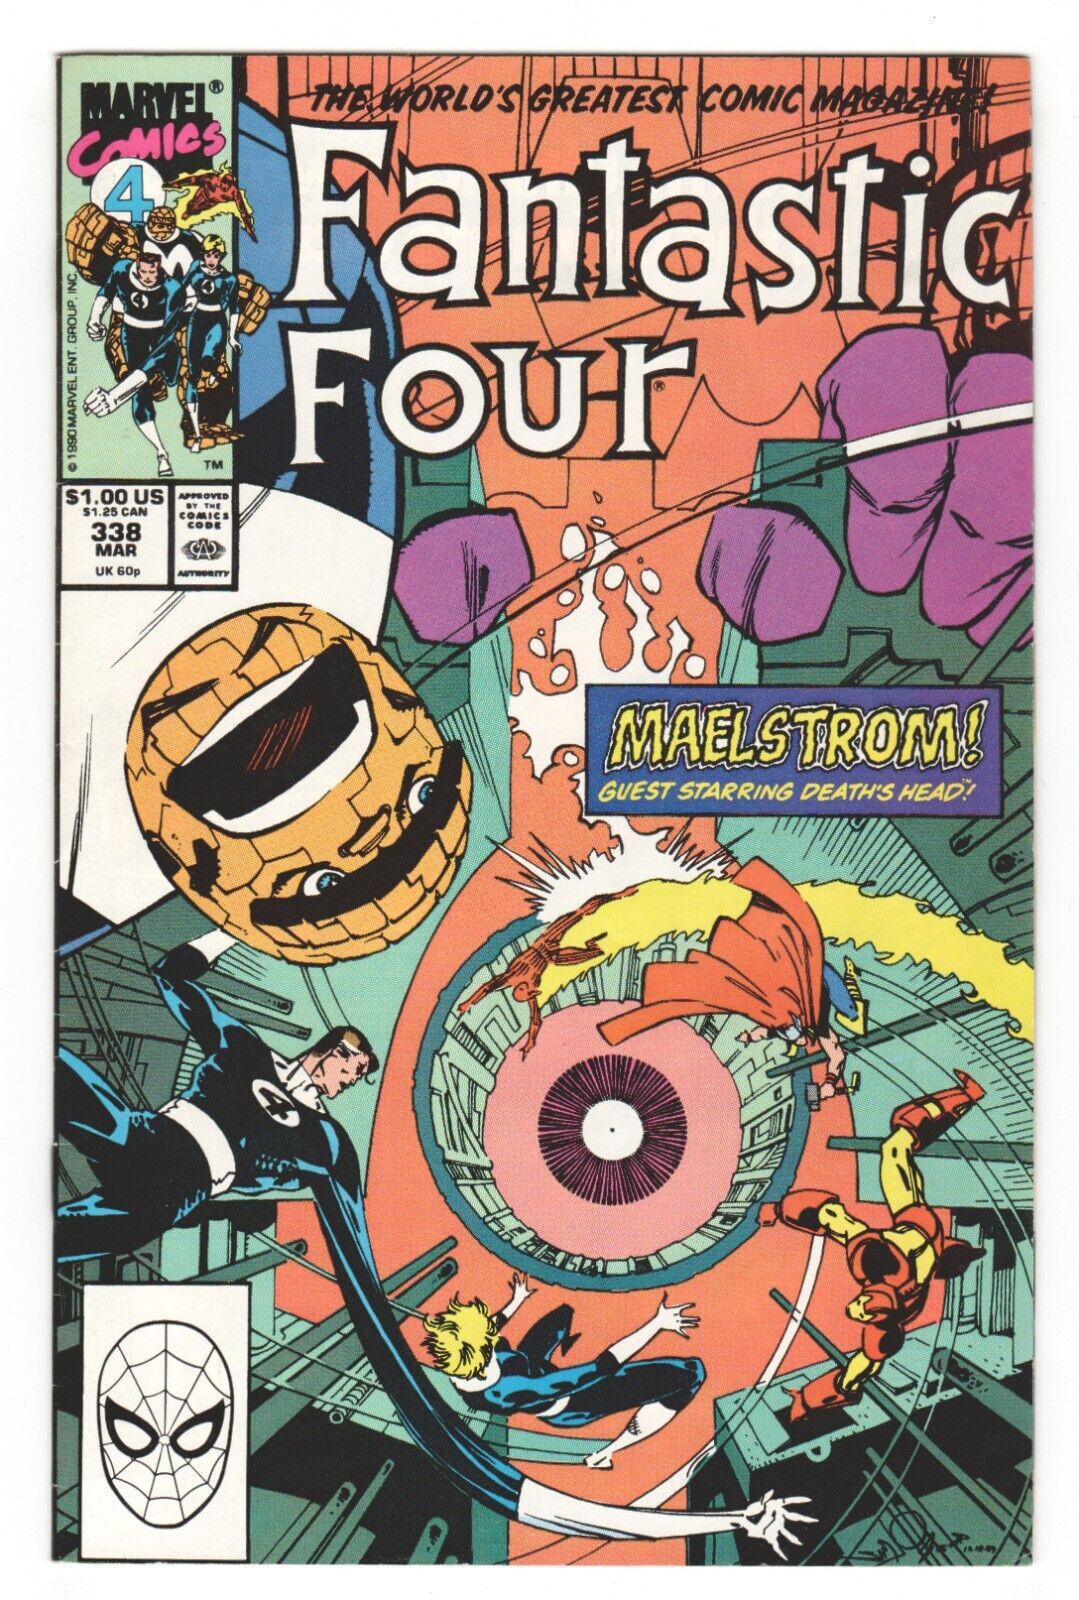 Fantastic Four #338 - MAELSTROM! - WALT SIMONSON Cover Art FR 1.0